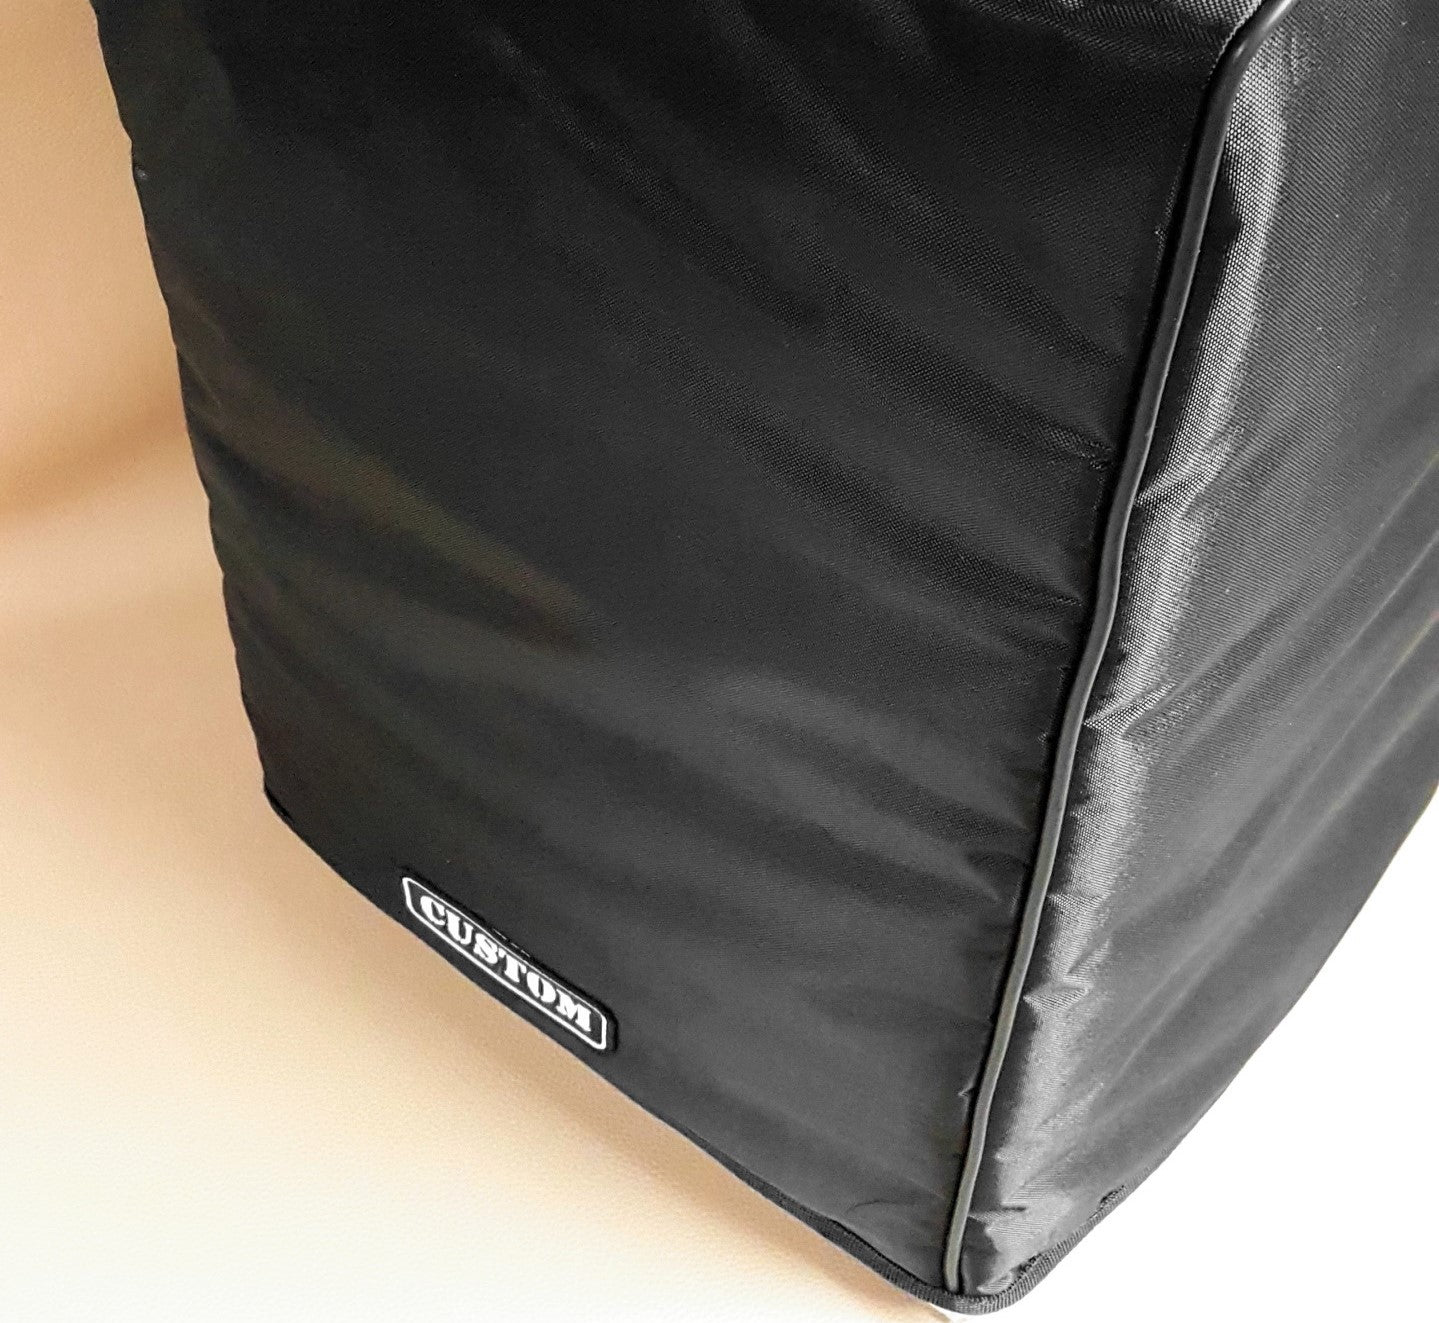 Custom padded cover for GENELEC M030 (pair) Studio Monitors